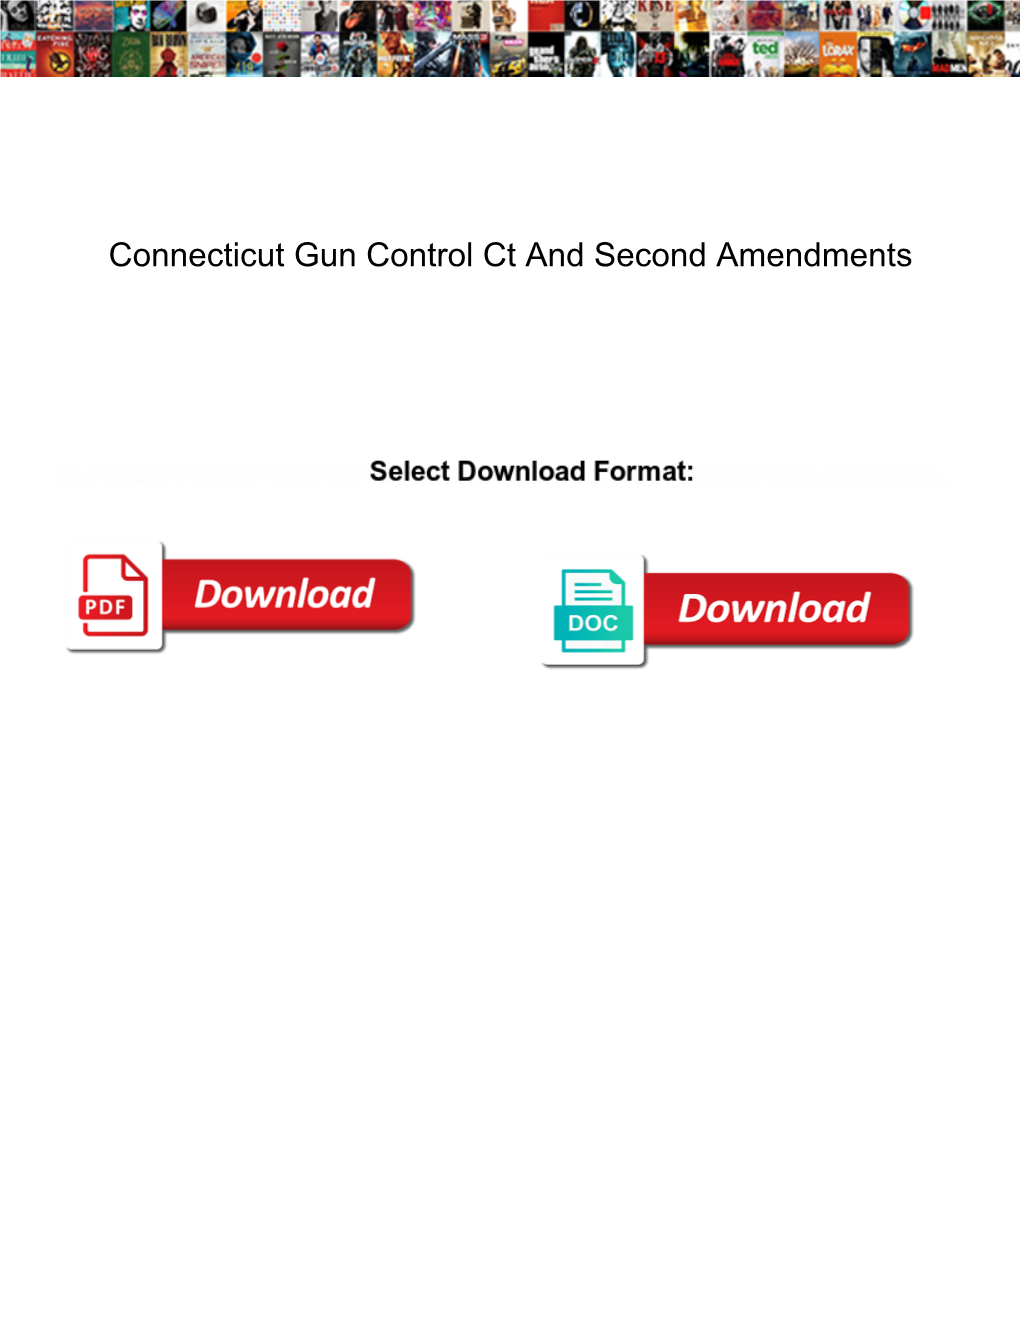 Connecticut Gun Control Ct and Second Amendments